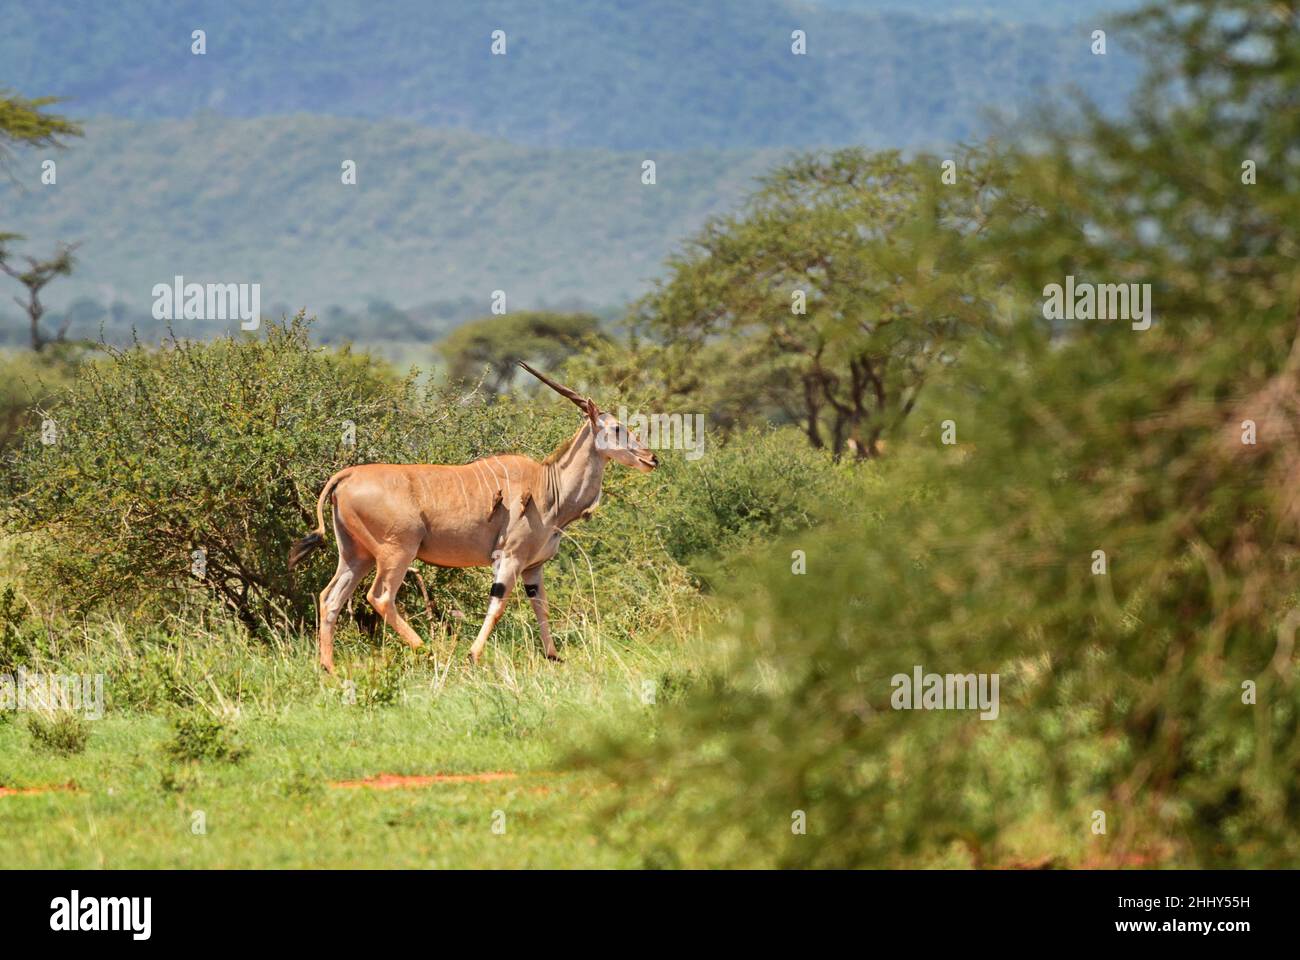 Gewöhnlicher Eland - Taurotragus oryx, große seltene Antilope aus afrikanischen Büschen und Savannen, Tsavo East, Kenia. Stockfoto